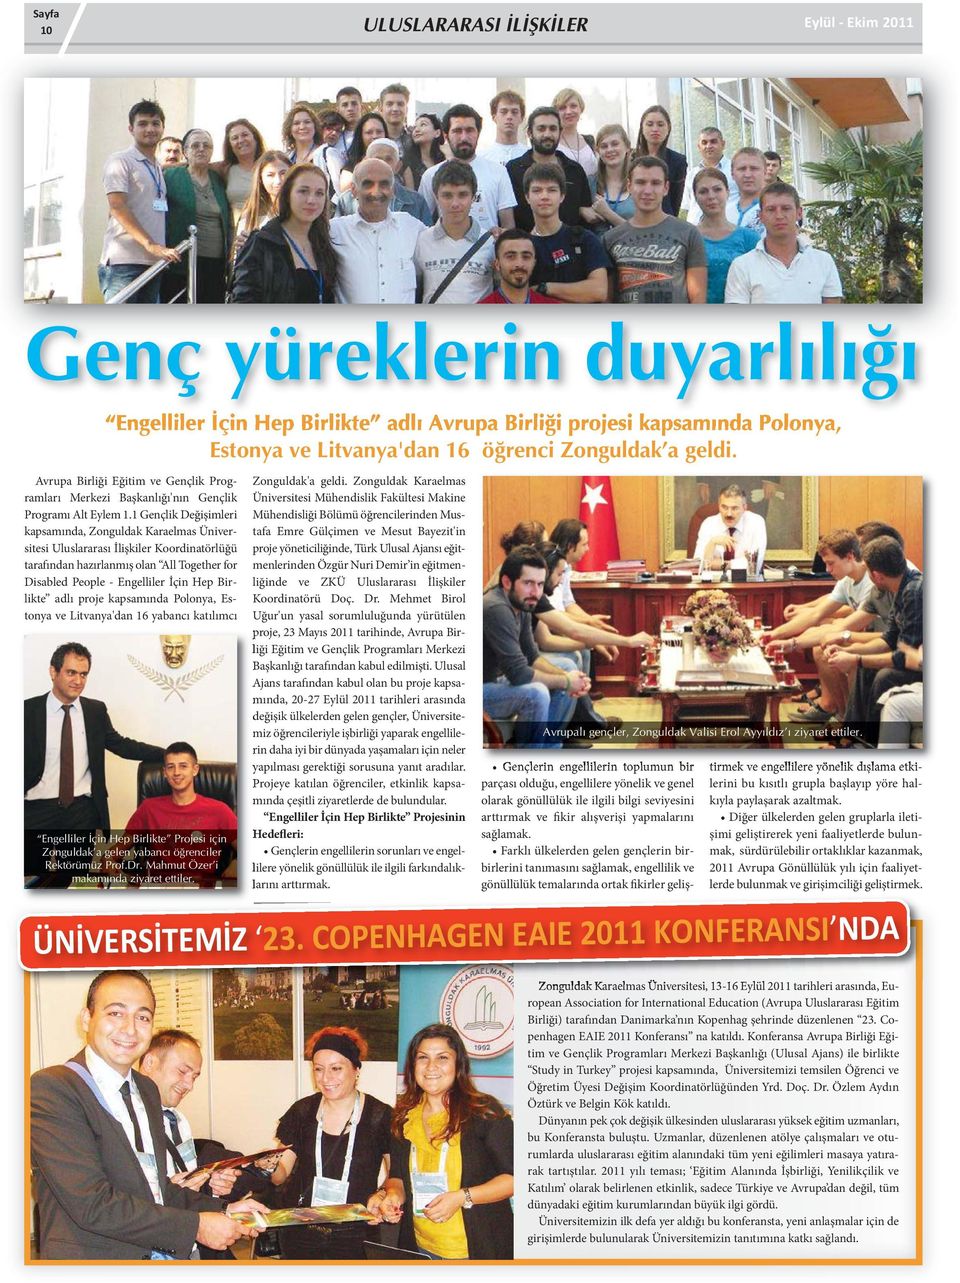 1 Gençlik Değişimleri kapsamında, Zonguldak Karaelmas Üniversitesi Uluslararası İlişkiler Koordinatörlüğü tarafından hazırlanmış olan All Together for Disabled People - Engelliler İçin Hep Birlikte